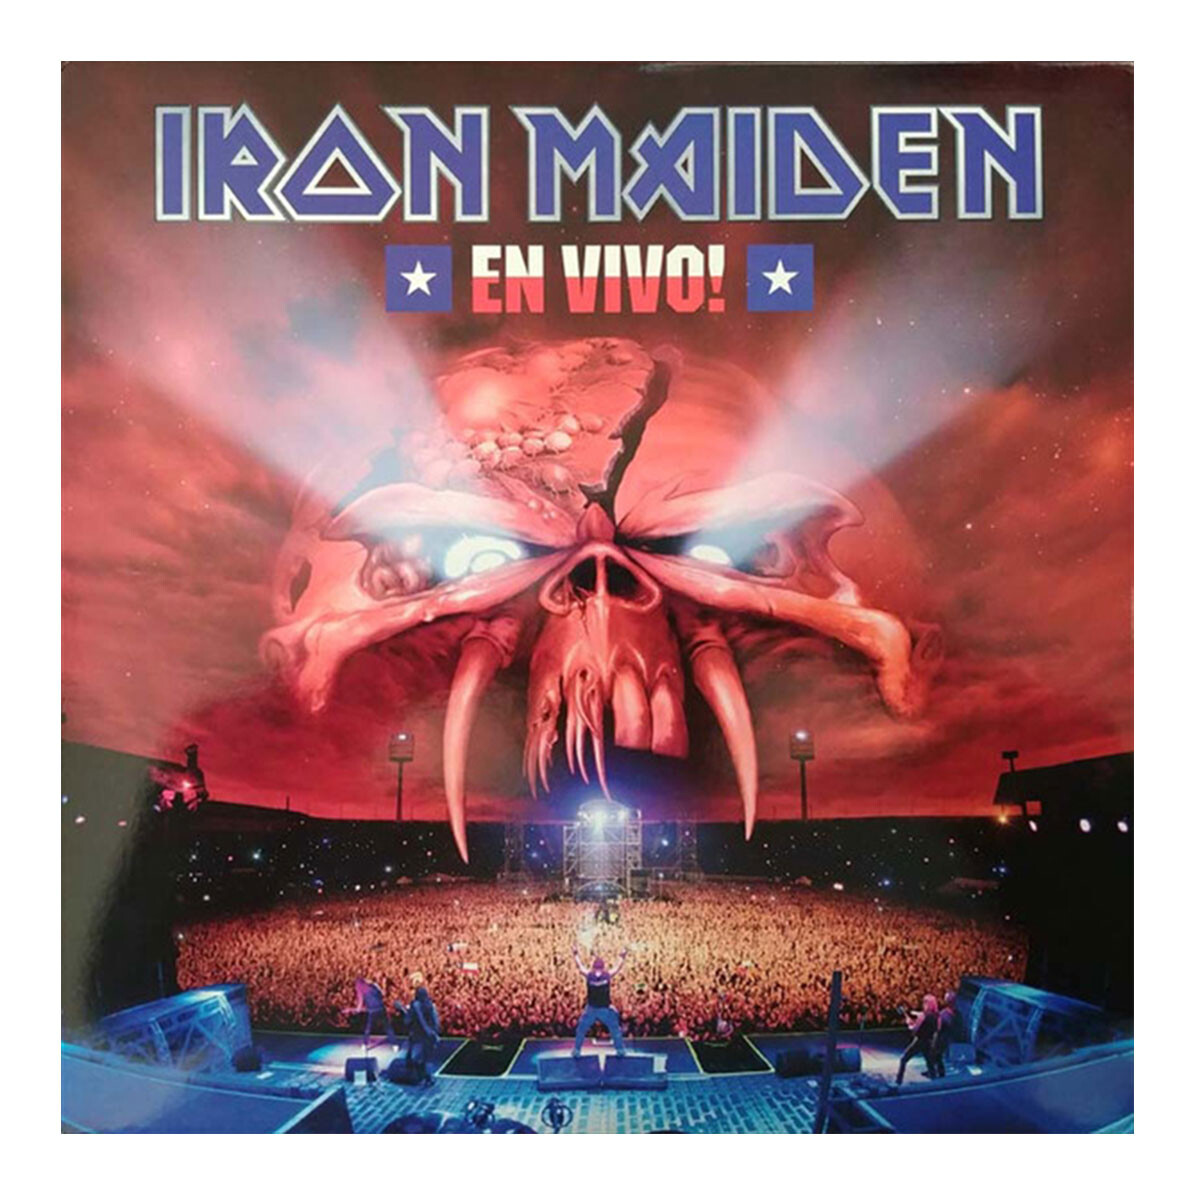 Iron Maiden - En Vivo! - Vinilo